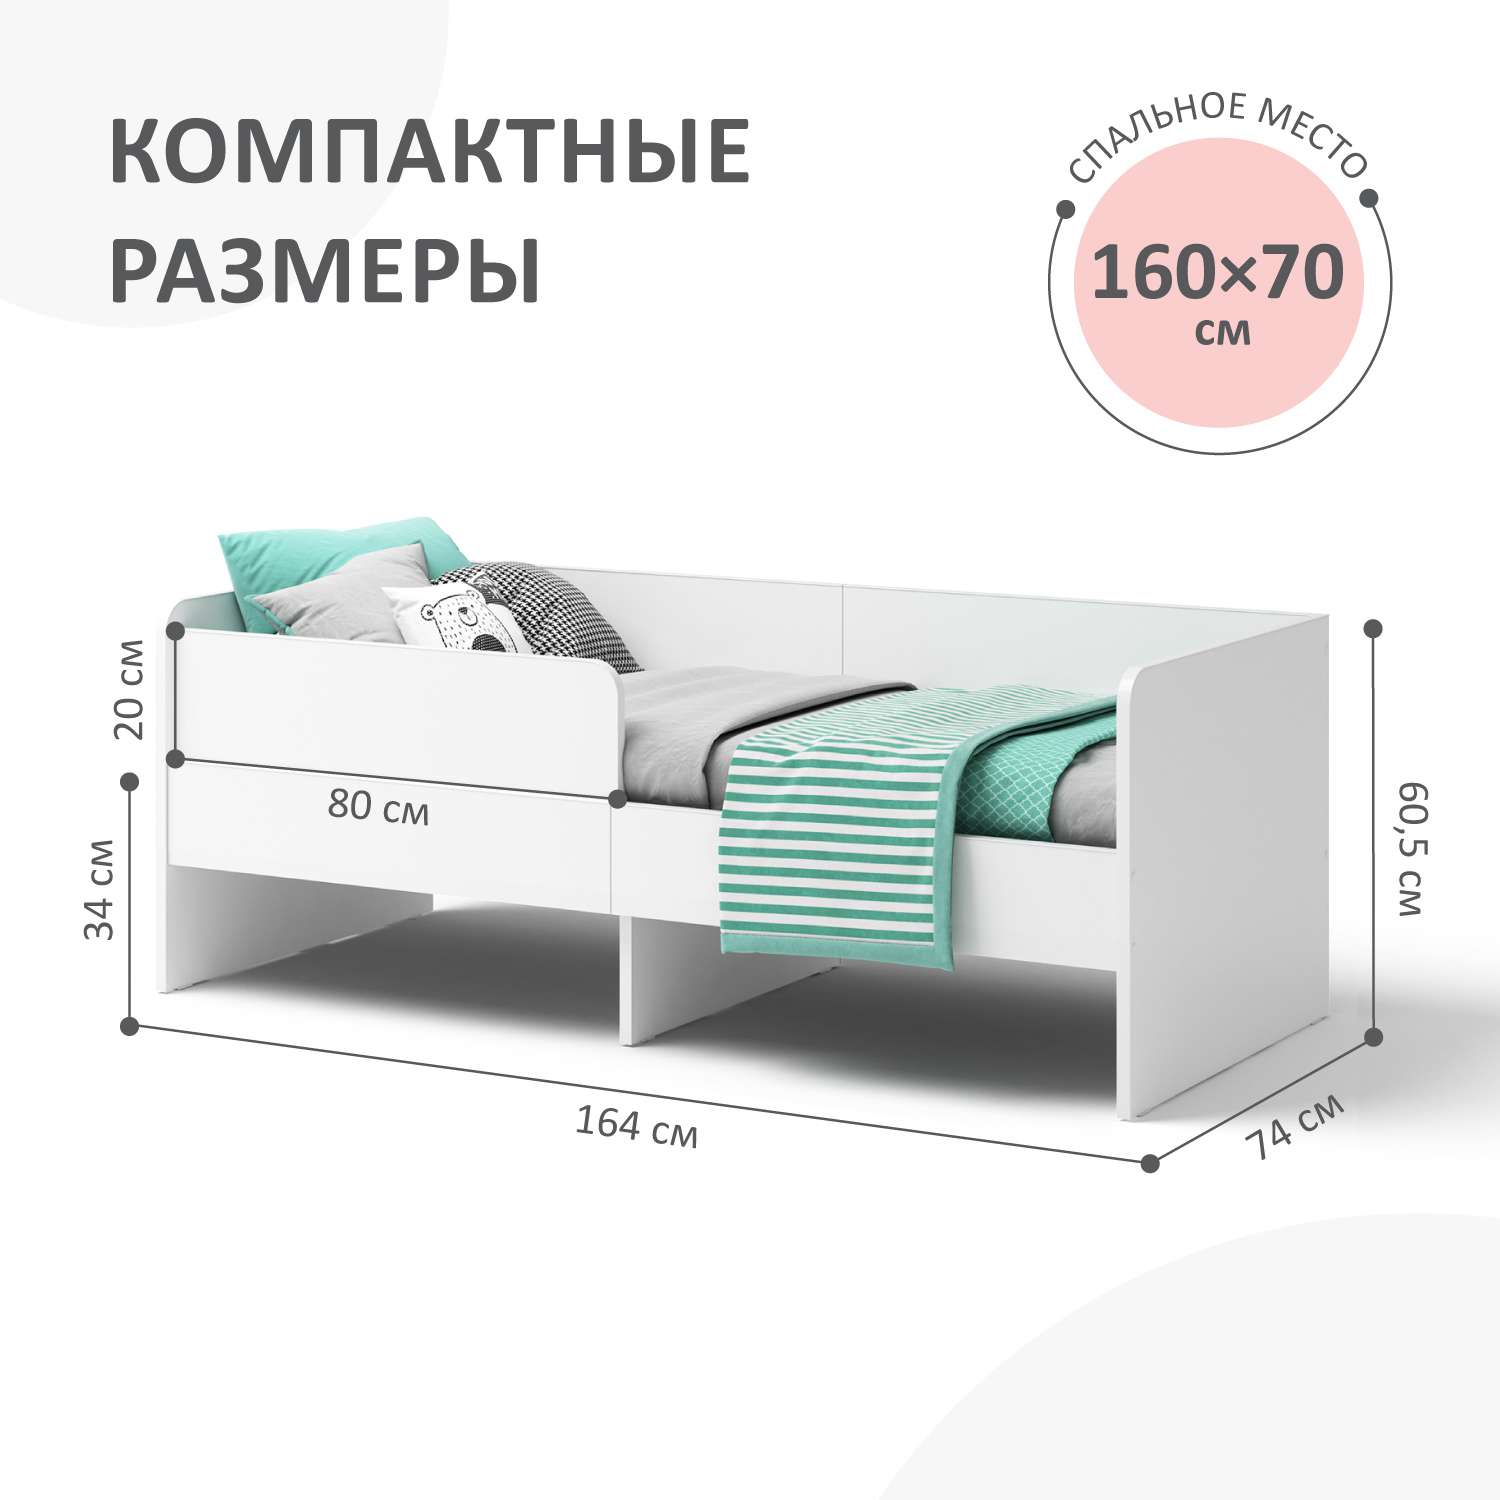 Детская кровать Умка 160*70 см ROMACK на ортопедическом основании с защитным бортиком - фото 2